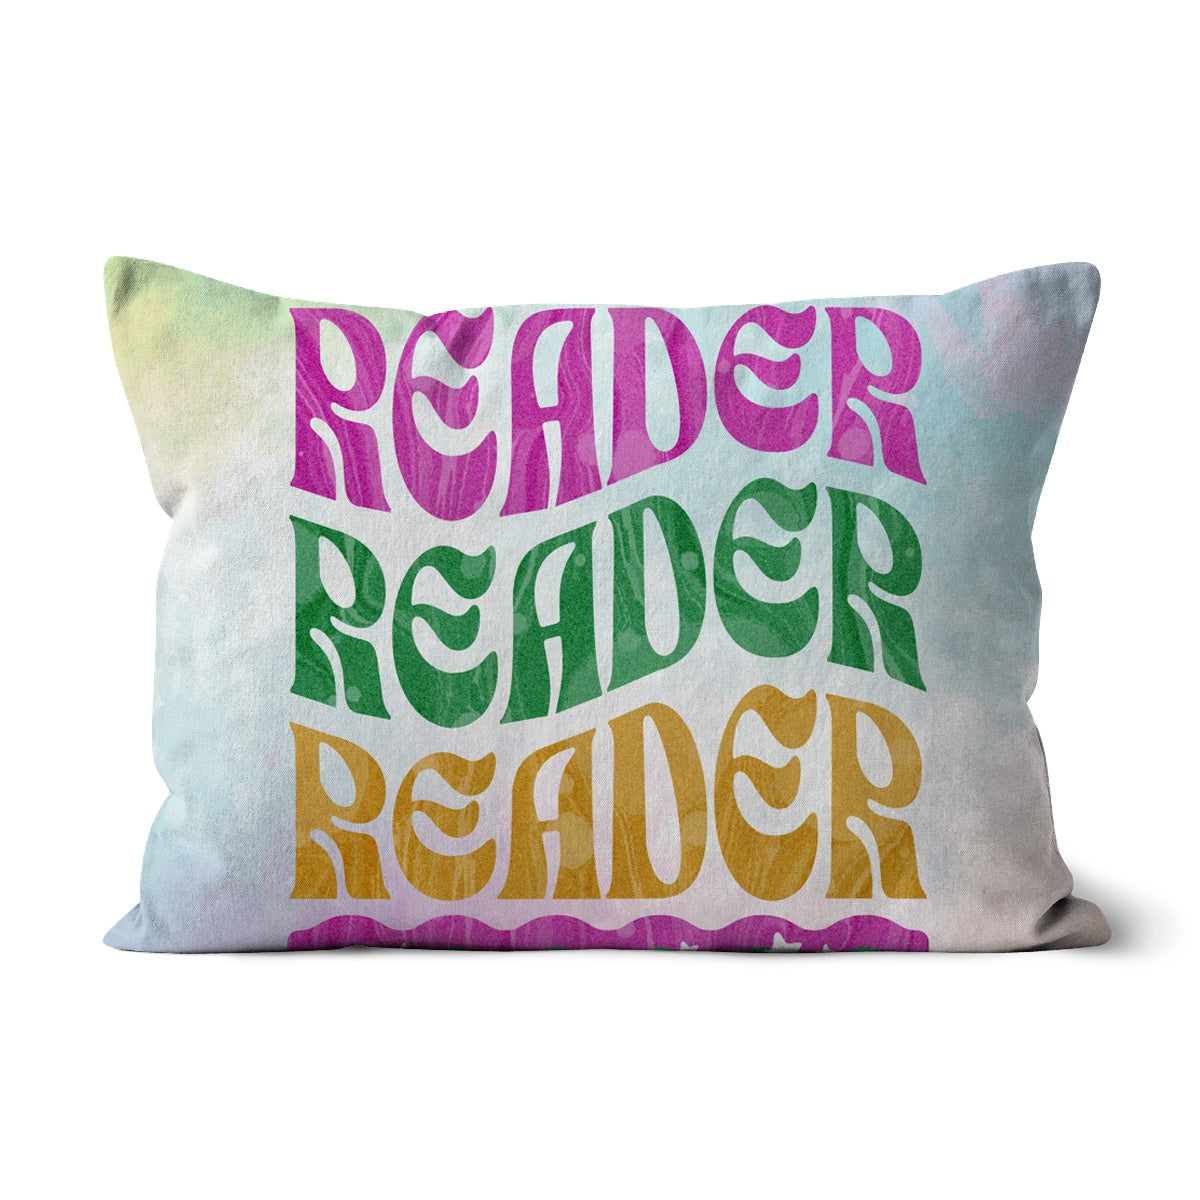 Reader Reader Cushion